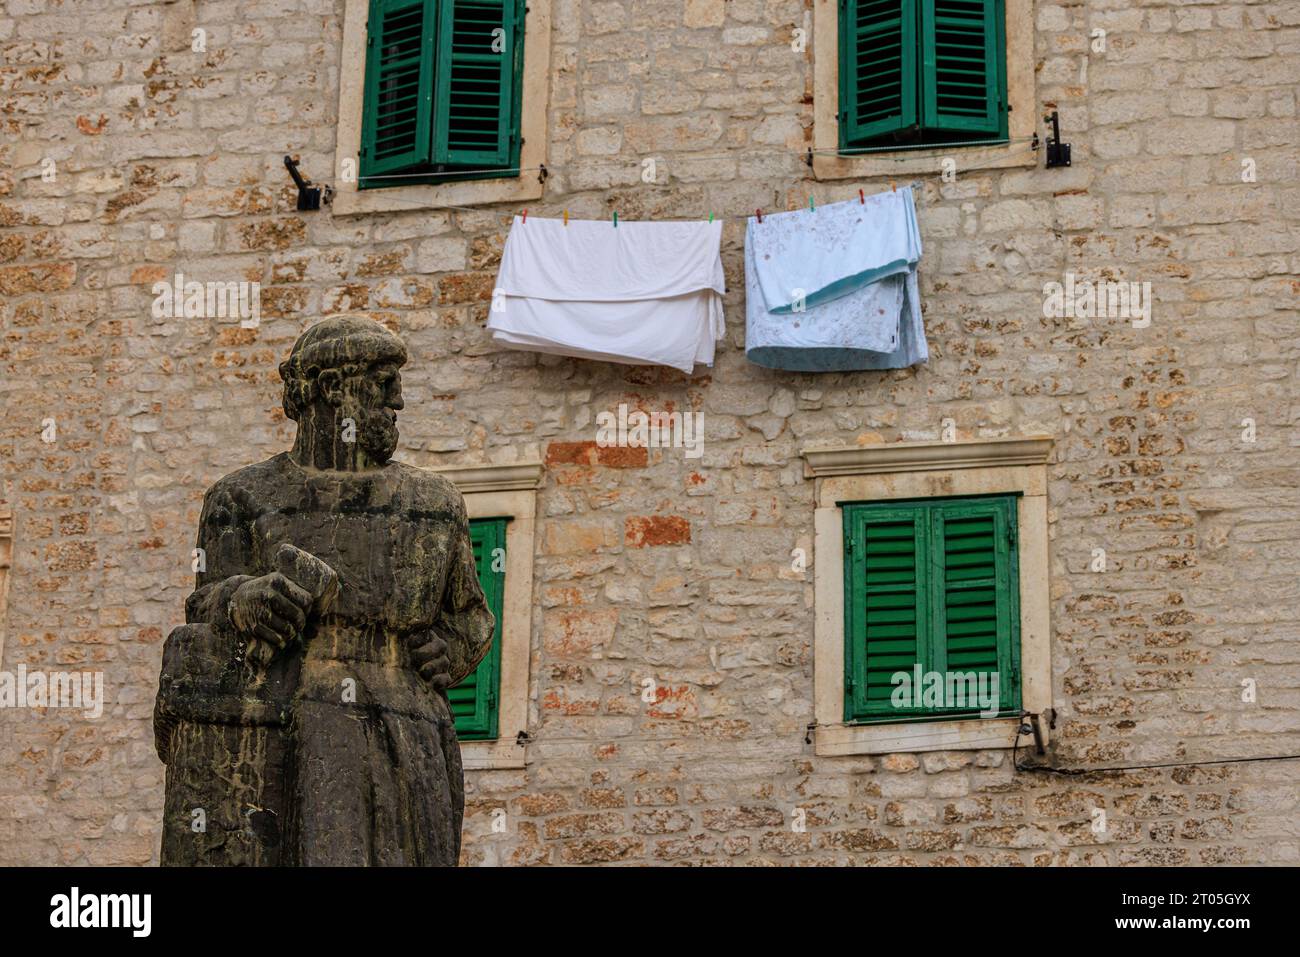 la statua del jurai dalmatinek guarda con disprezzo i vestiti che si stendono ad asciugare sotto due finestre verdi a persiane nella piazza della cattedrale di sibenik croazia Foto Stock